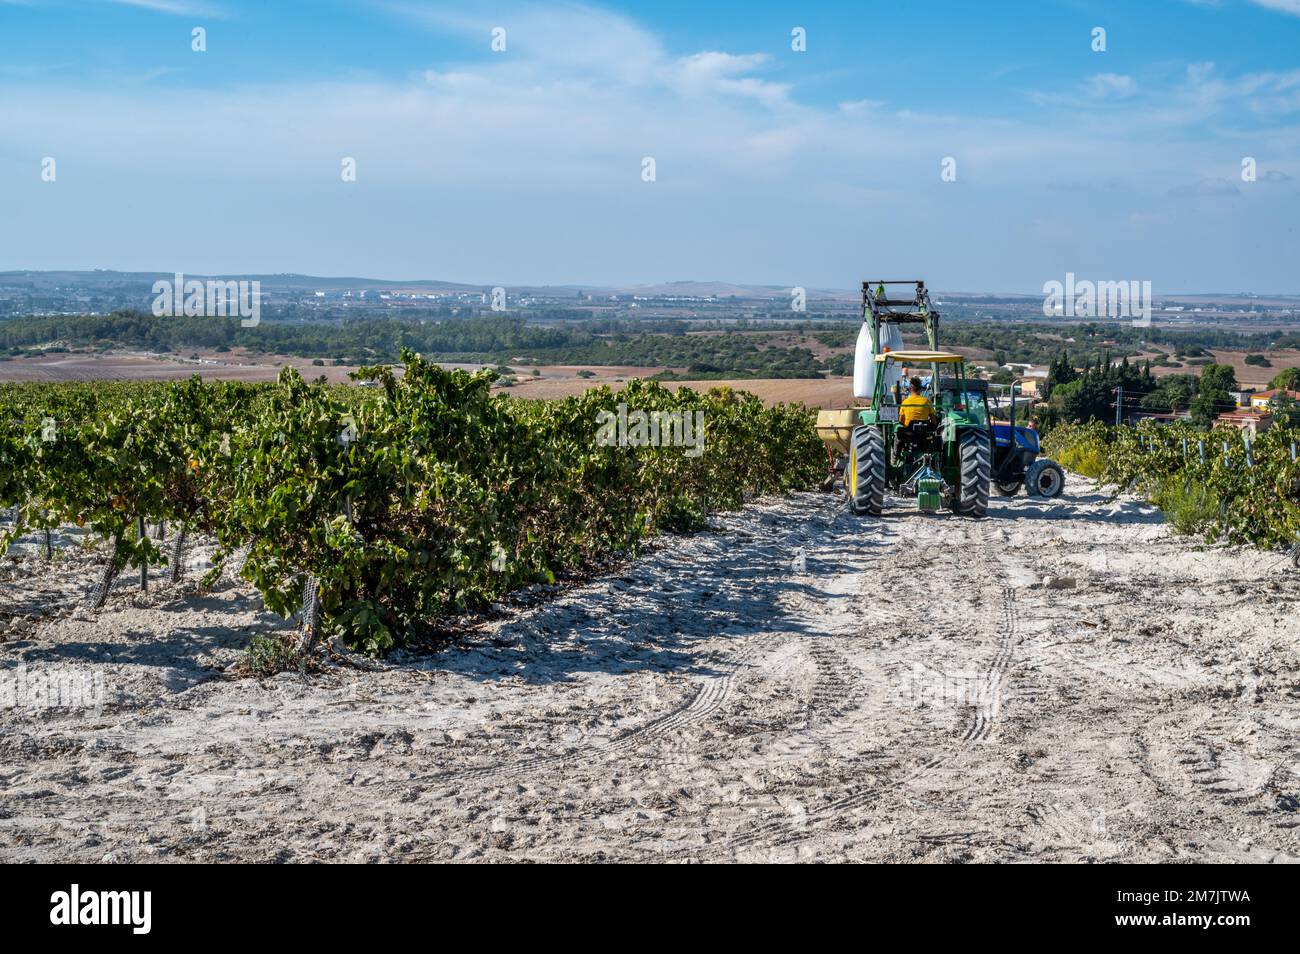 Tracteurs entre les rangées de vignes pour épandre de l'engrais, Jerez de la Frontera, Espagne Banque D'Images